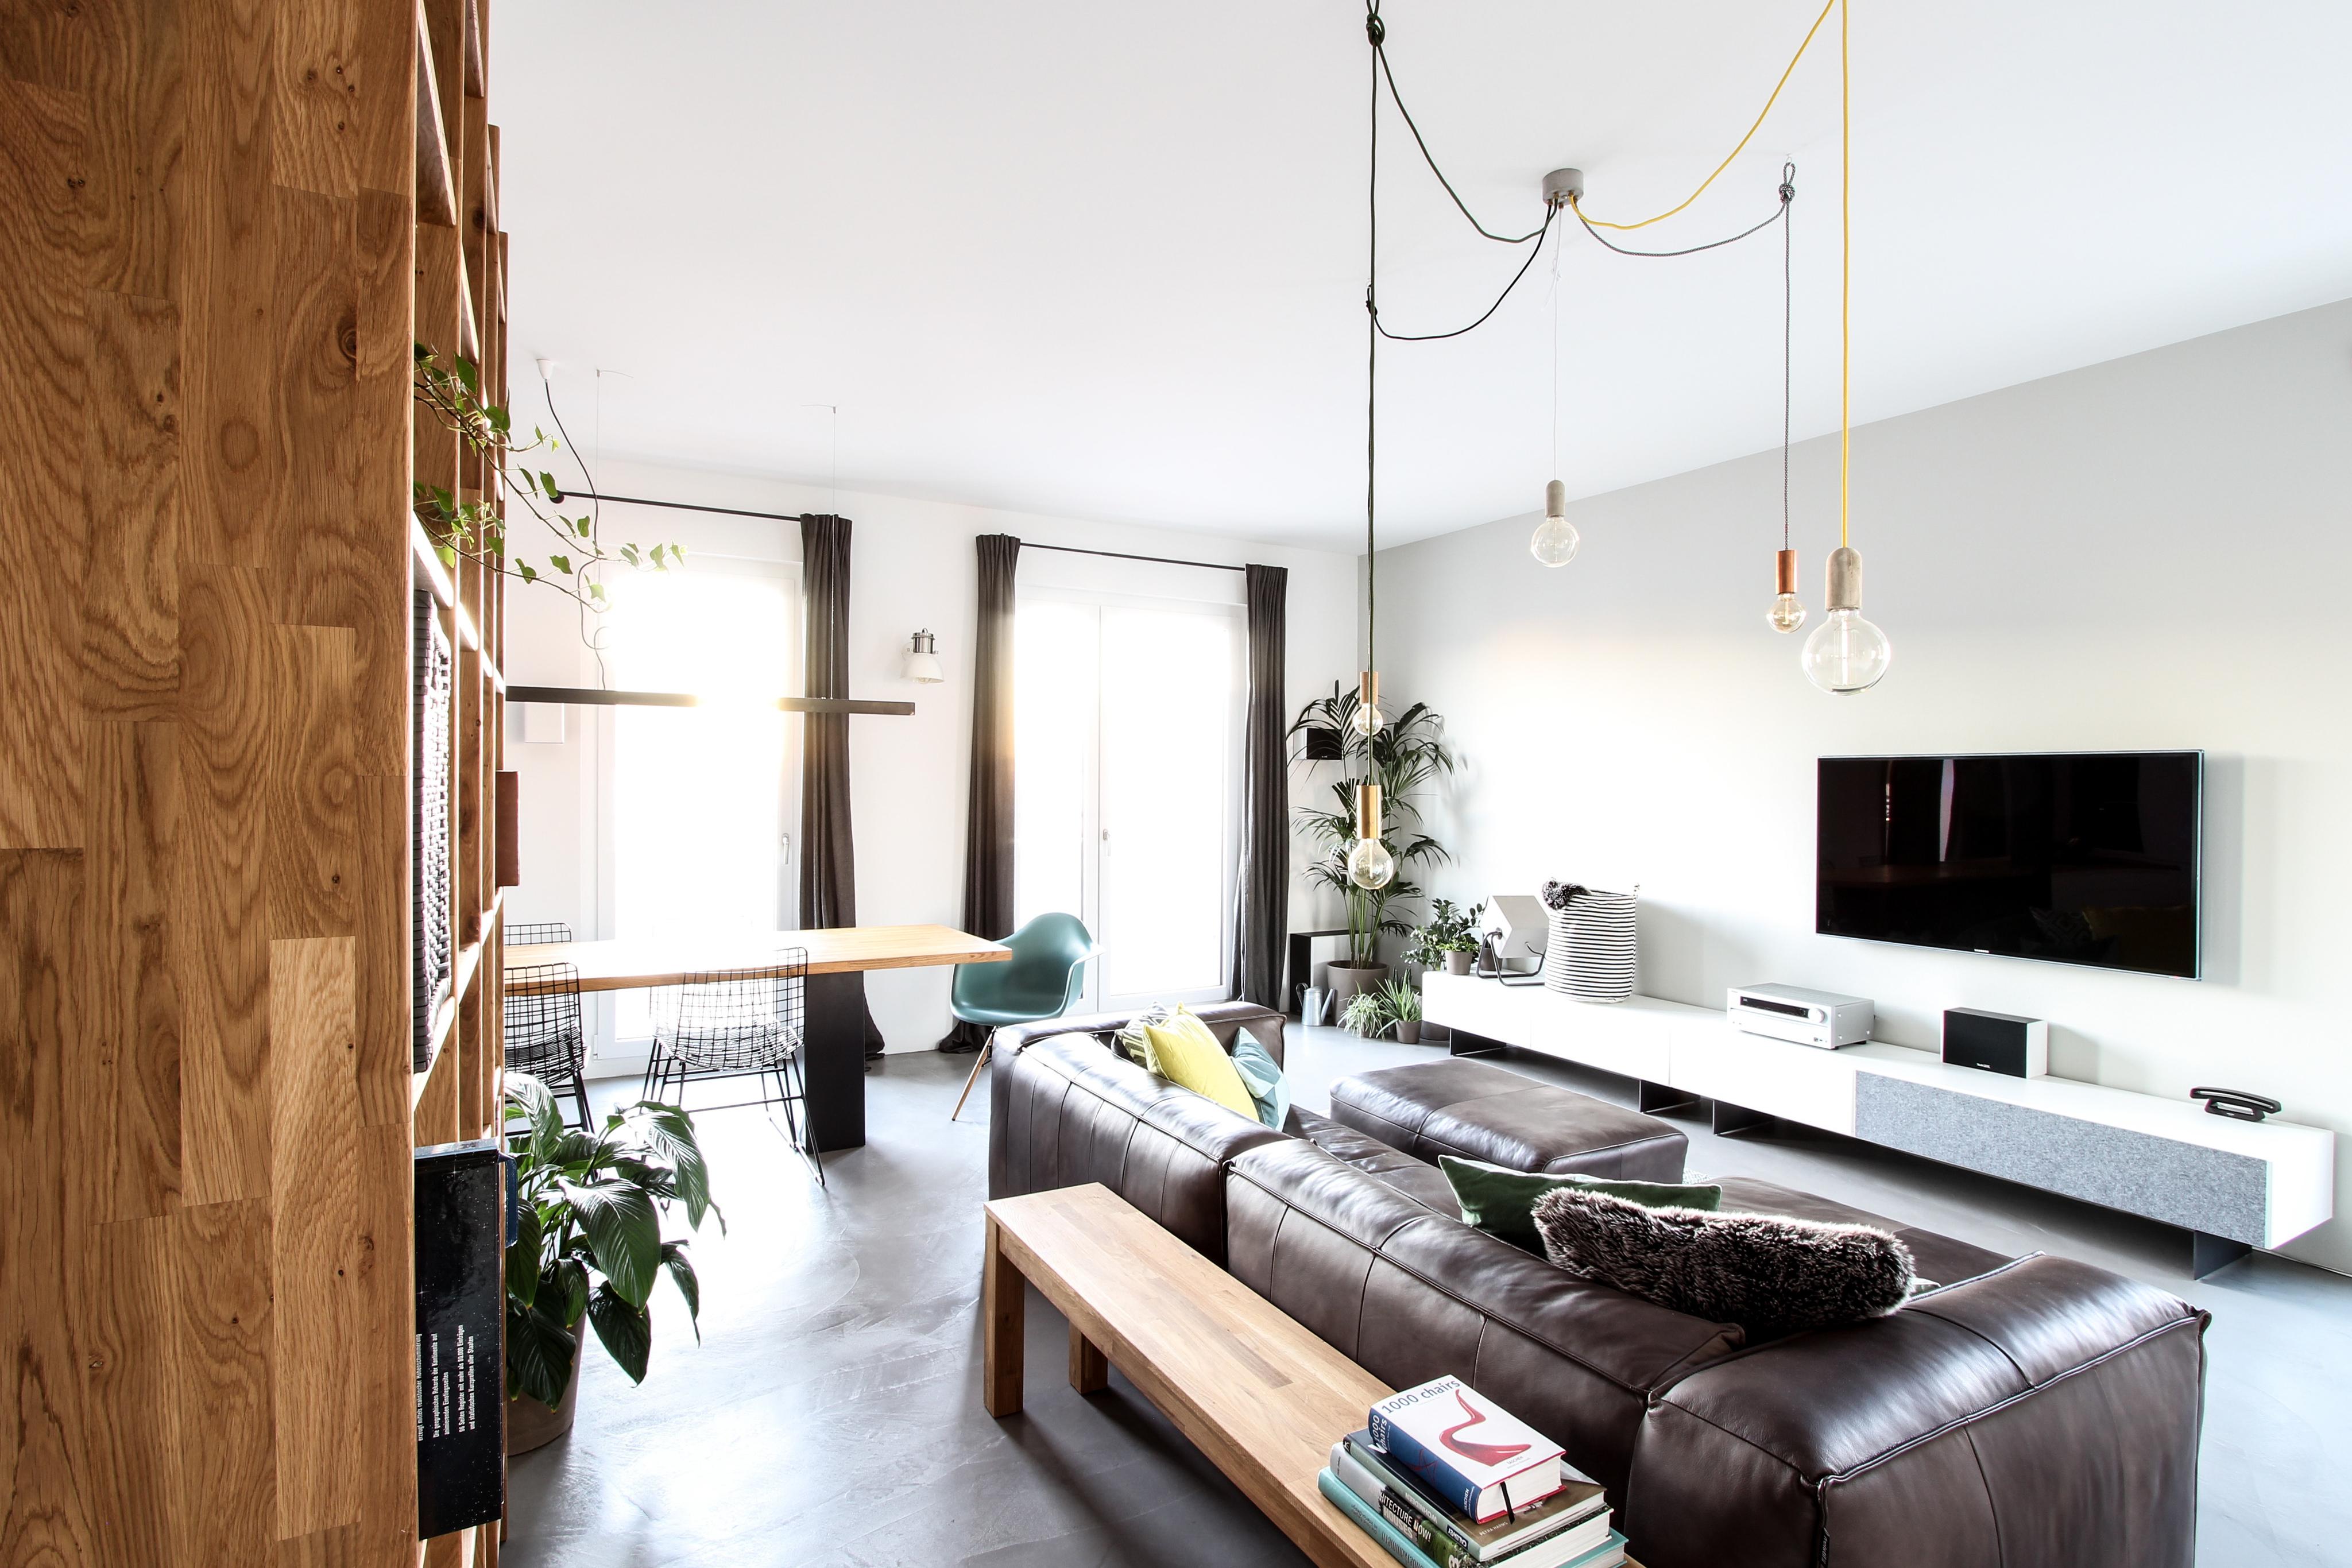 Praktische Ablagefläche hinter der Couch #regal #offenerwohnbereich ©EXTRAVIEL office & home design